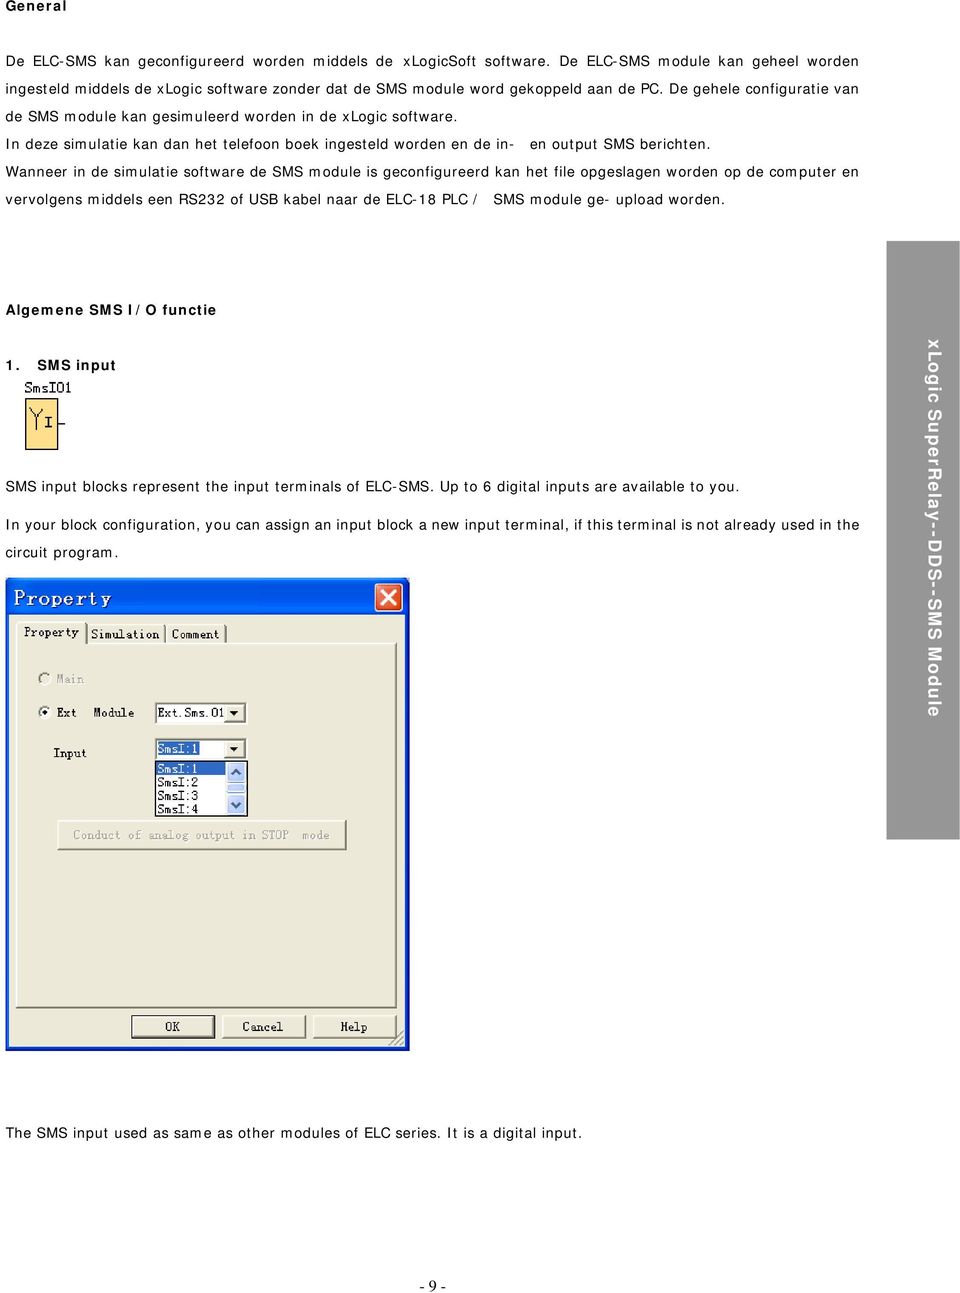 Wanneer in de simulatie software de SMS module is geconfigureerd kan het file opgeslagen worden op de computer en vervolgens middels een RS232 of USB kabel naar de ELC-18 PLC / SMS module ge- upload